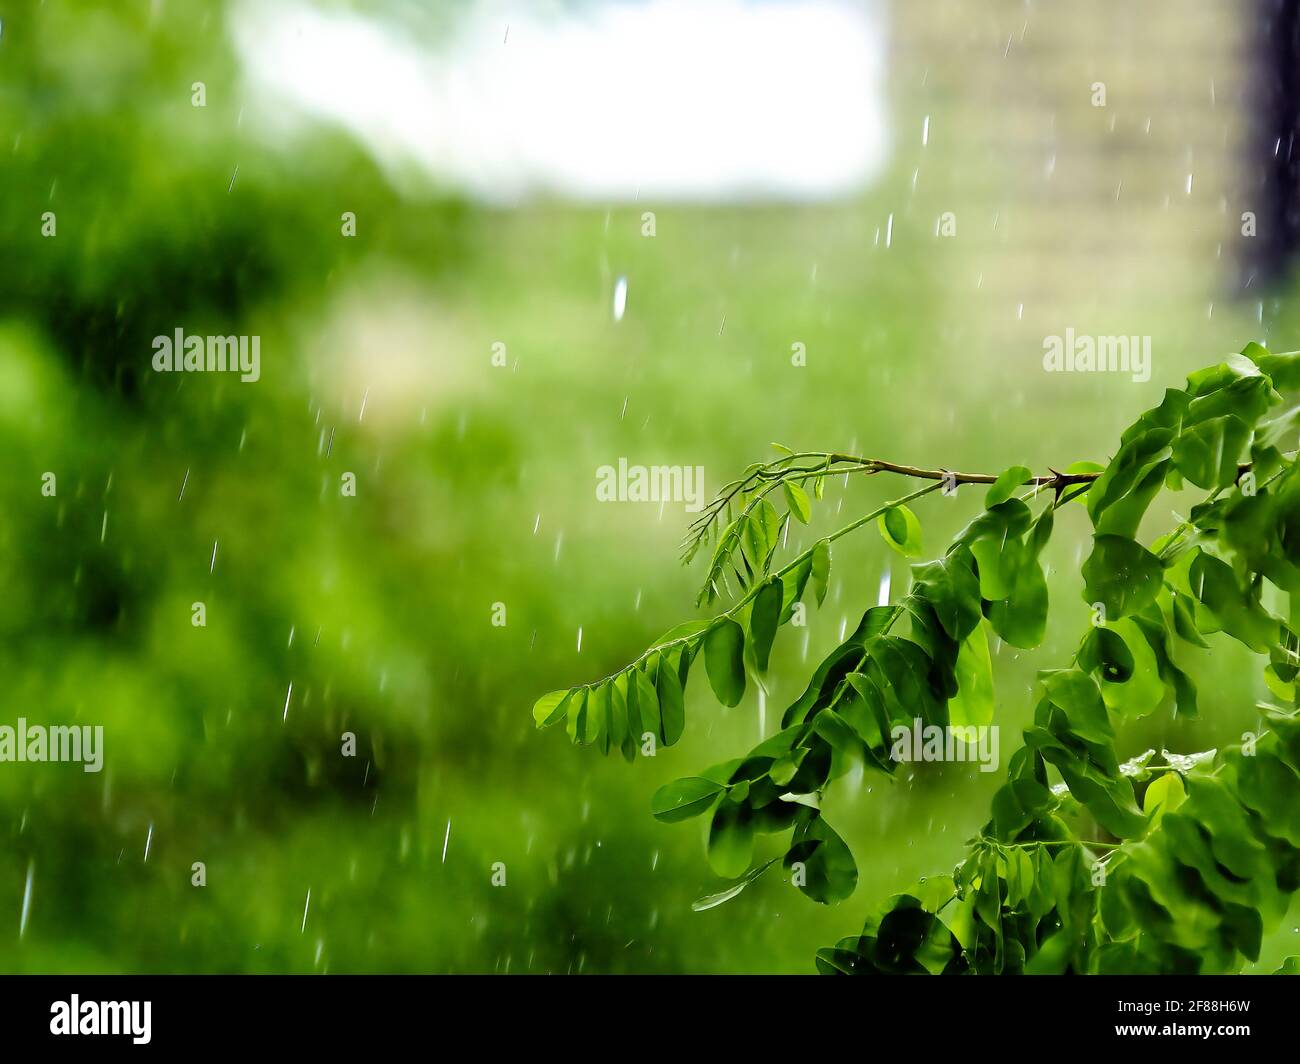 Un albero di Locust tamponato dal diluvio di una tempesta estiva, con il movimento delle gocce di pioggia congelate dall'otturatore veloce. Foto Stock